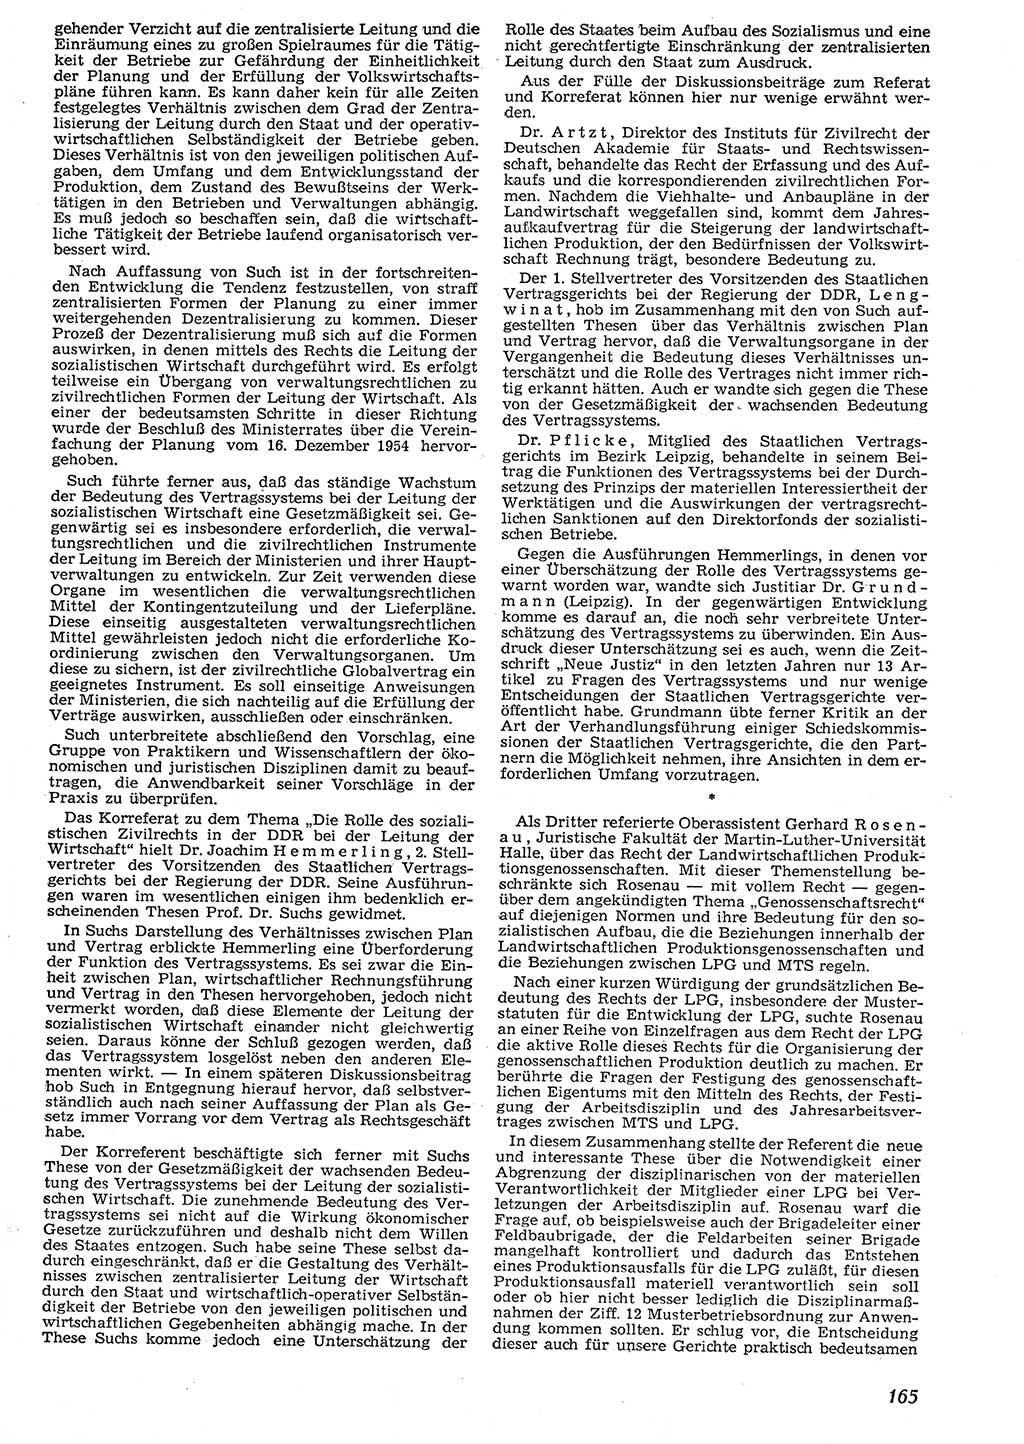 Neue Justiz (NJ), Zeitschrift für Recht und Rechtswissenschaft [Deutsche Demokratische Republik (DDR)], 10. Jahrgang 1956, Seite 165 (NJ DDR 1956, S. 165)